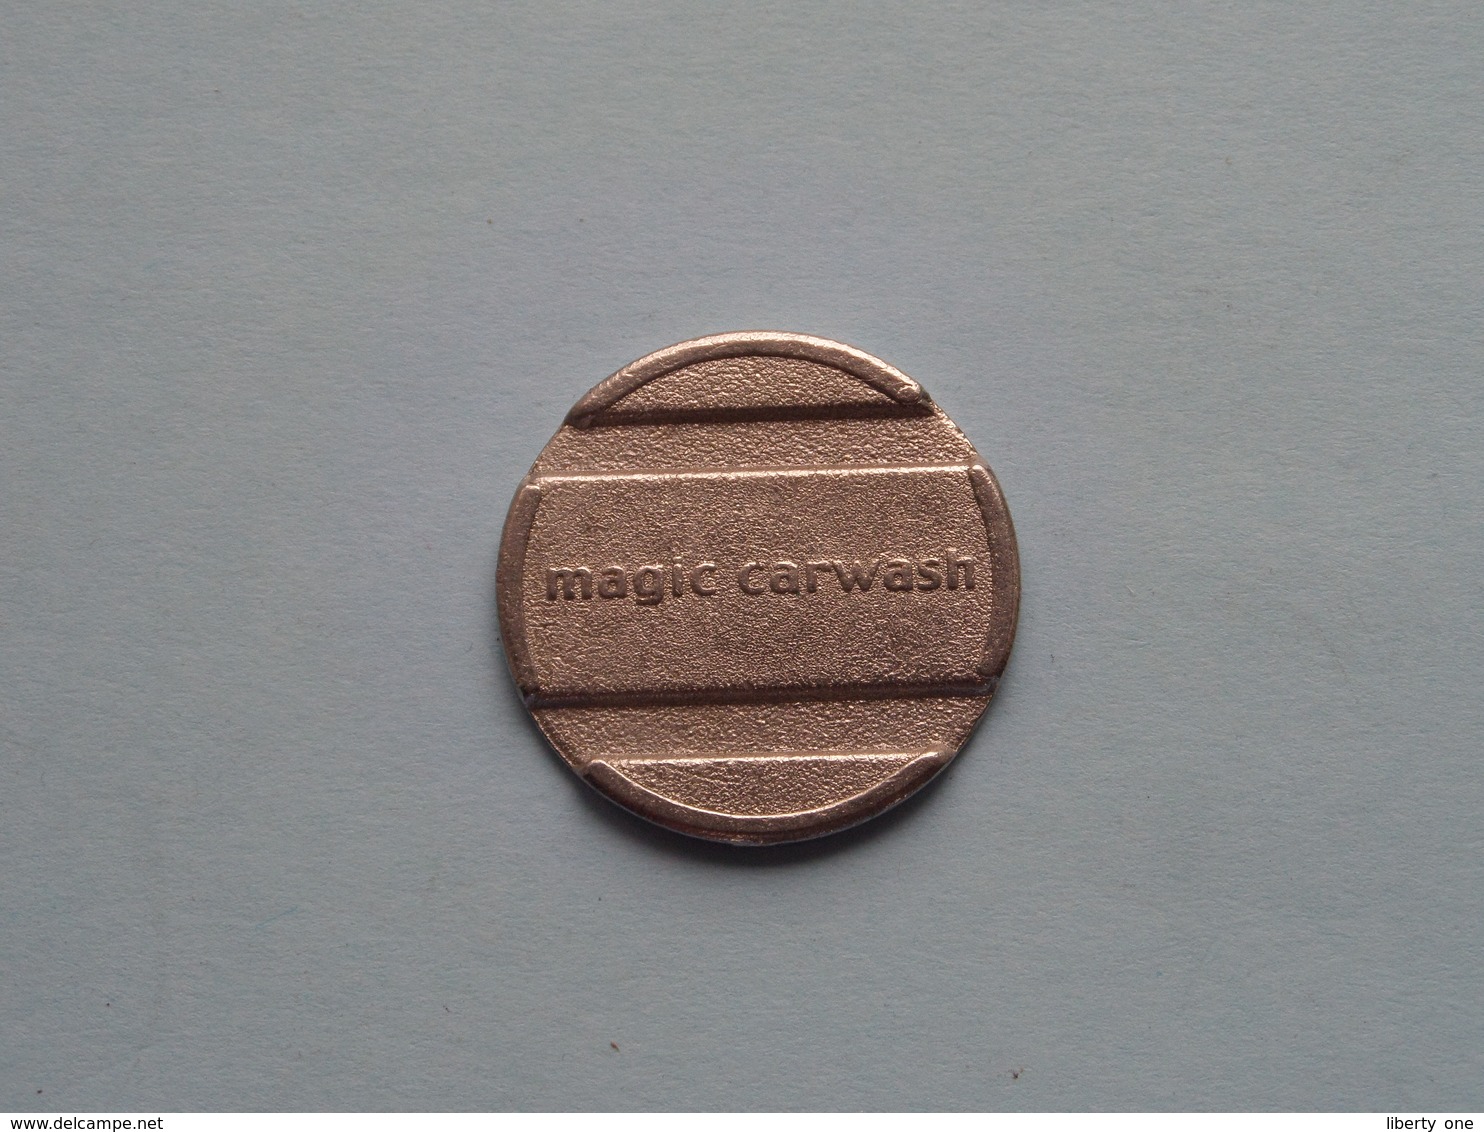 MAGIC CARWASH - 28 Mm. / 5.5 Gram ( Uncleaned ) ! - Professionnels / De Société